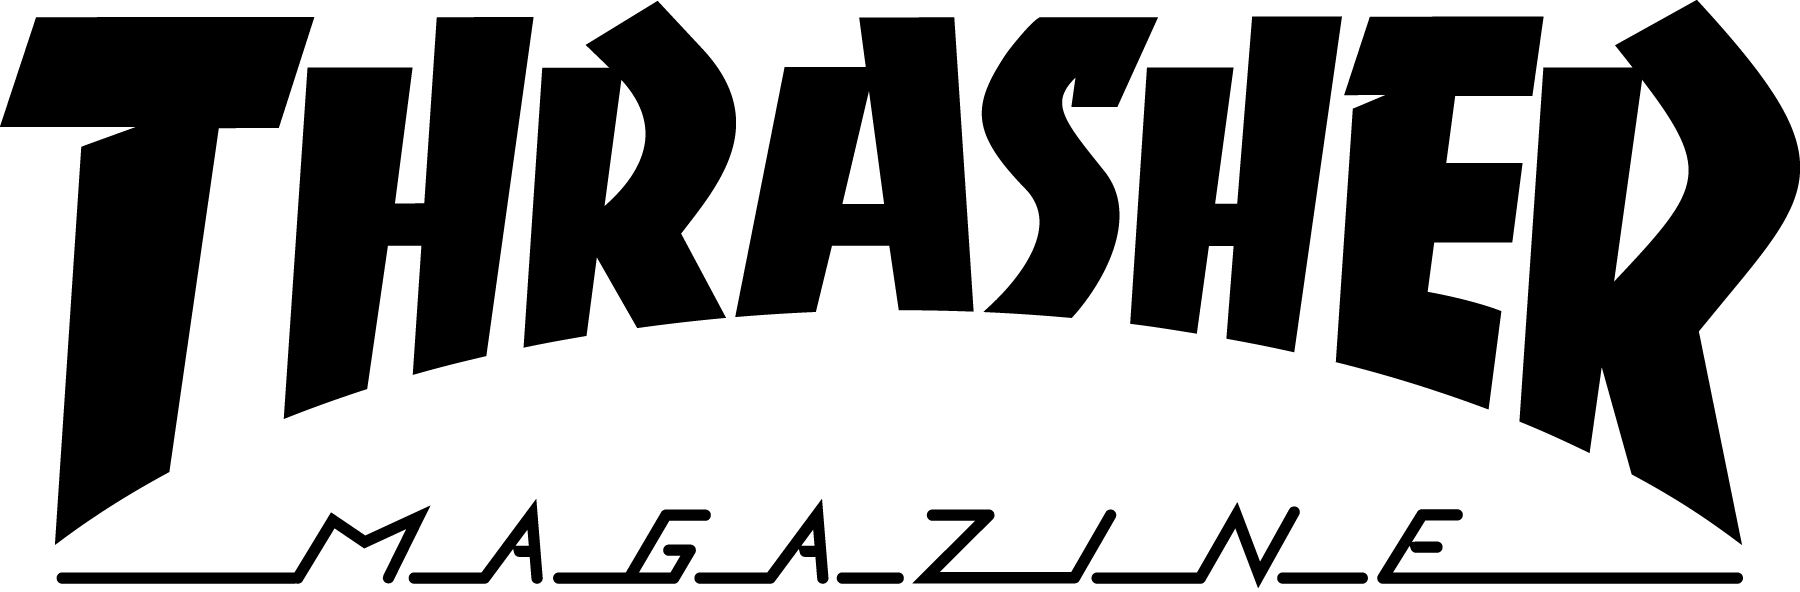 Das weltbekannte Thrasher Magazine Logo.